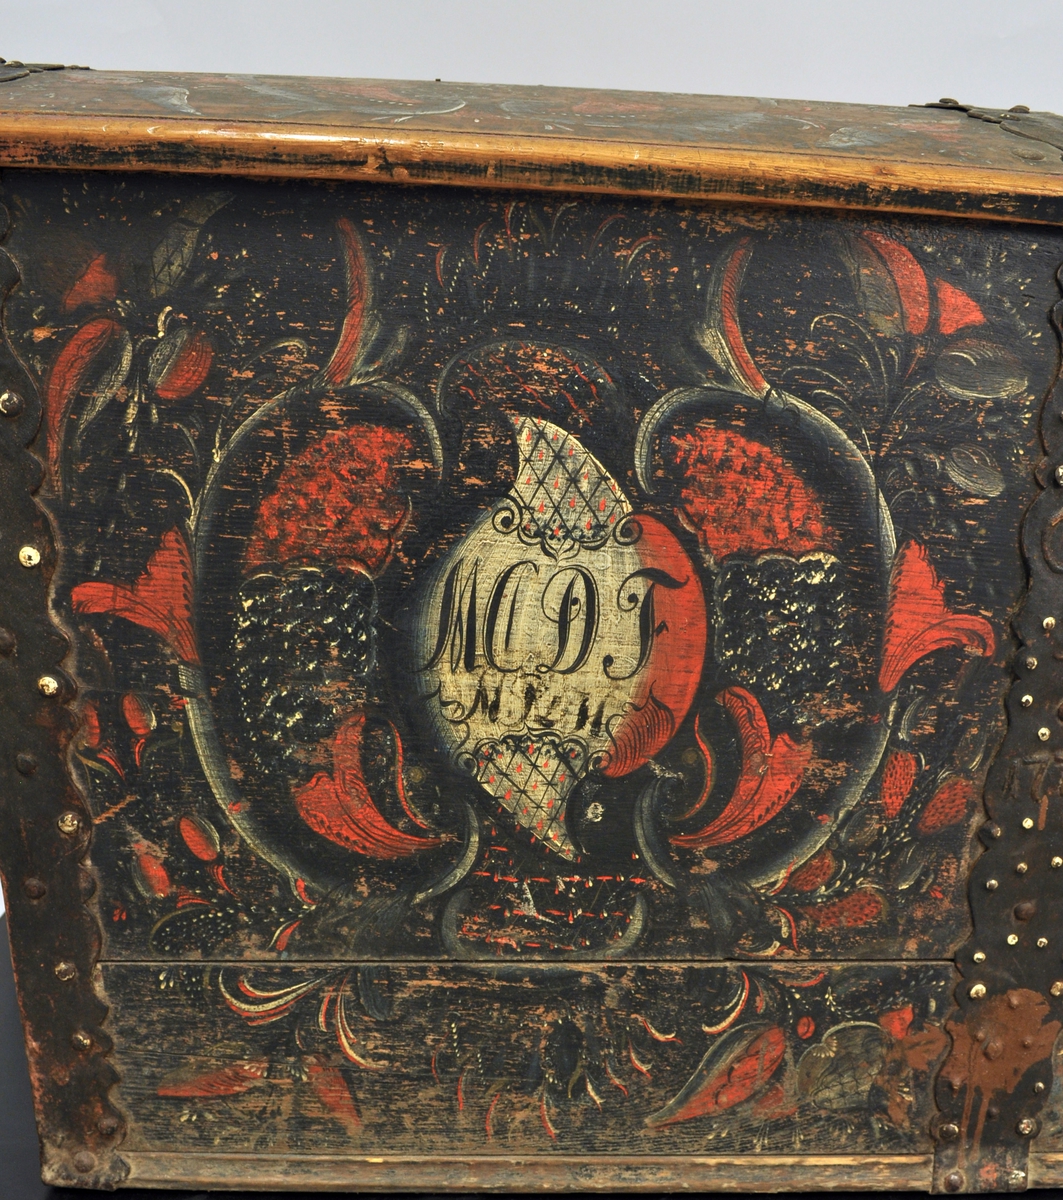 Fra protokollen: 
Kiste, rosemalt; de 3 sider av ek, forövrigt av furu. Paa jernbeslaget ved nöklehullet: C.K.S.F. 1774. Paa forsiden omgit av rosemaling: H.C.D.F. 1824.